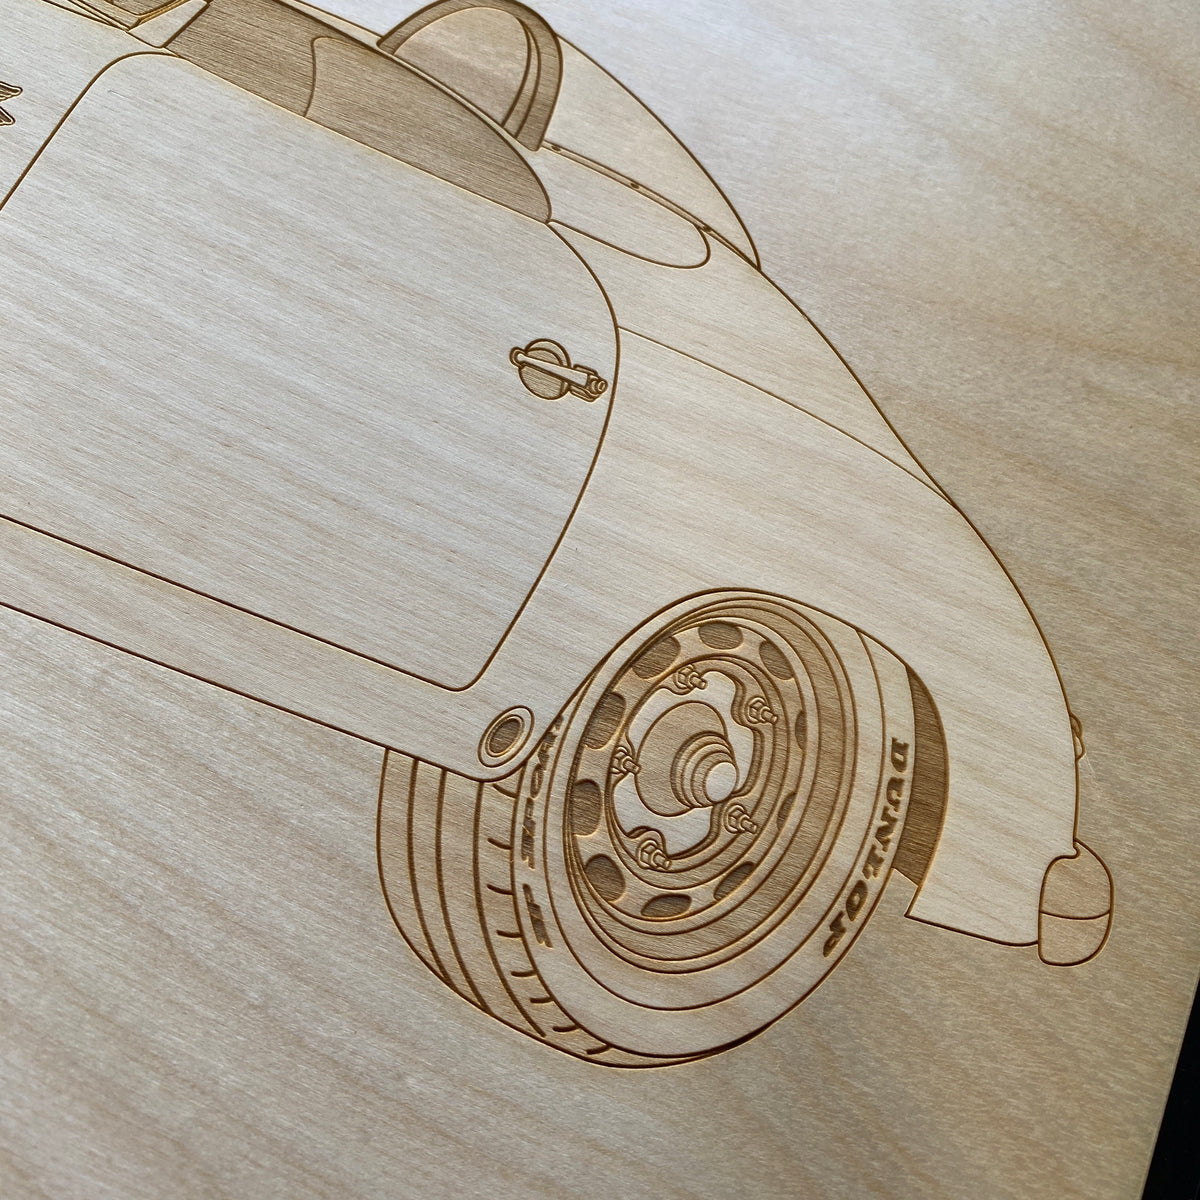 Emory Outlaw 356 Speedster Framed Wood Engraved Artwork